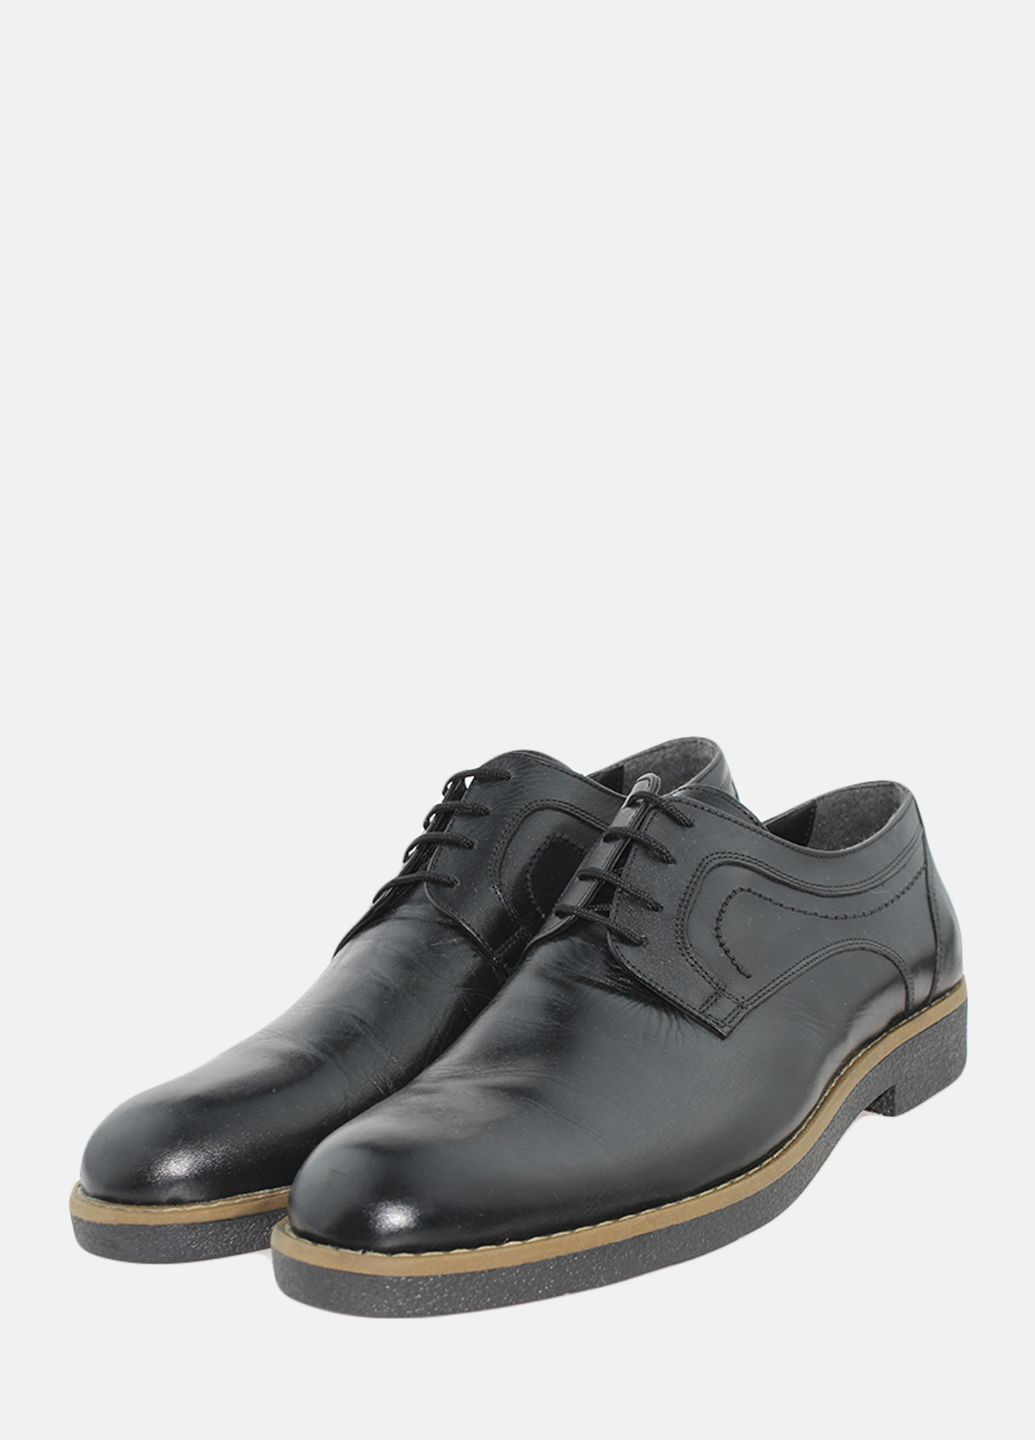 Черные туфли g1001.01 черный Goover